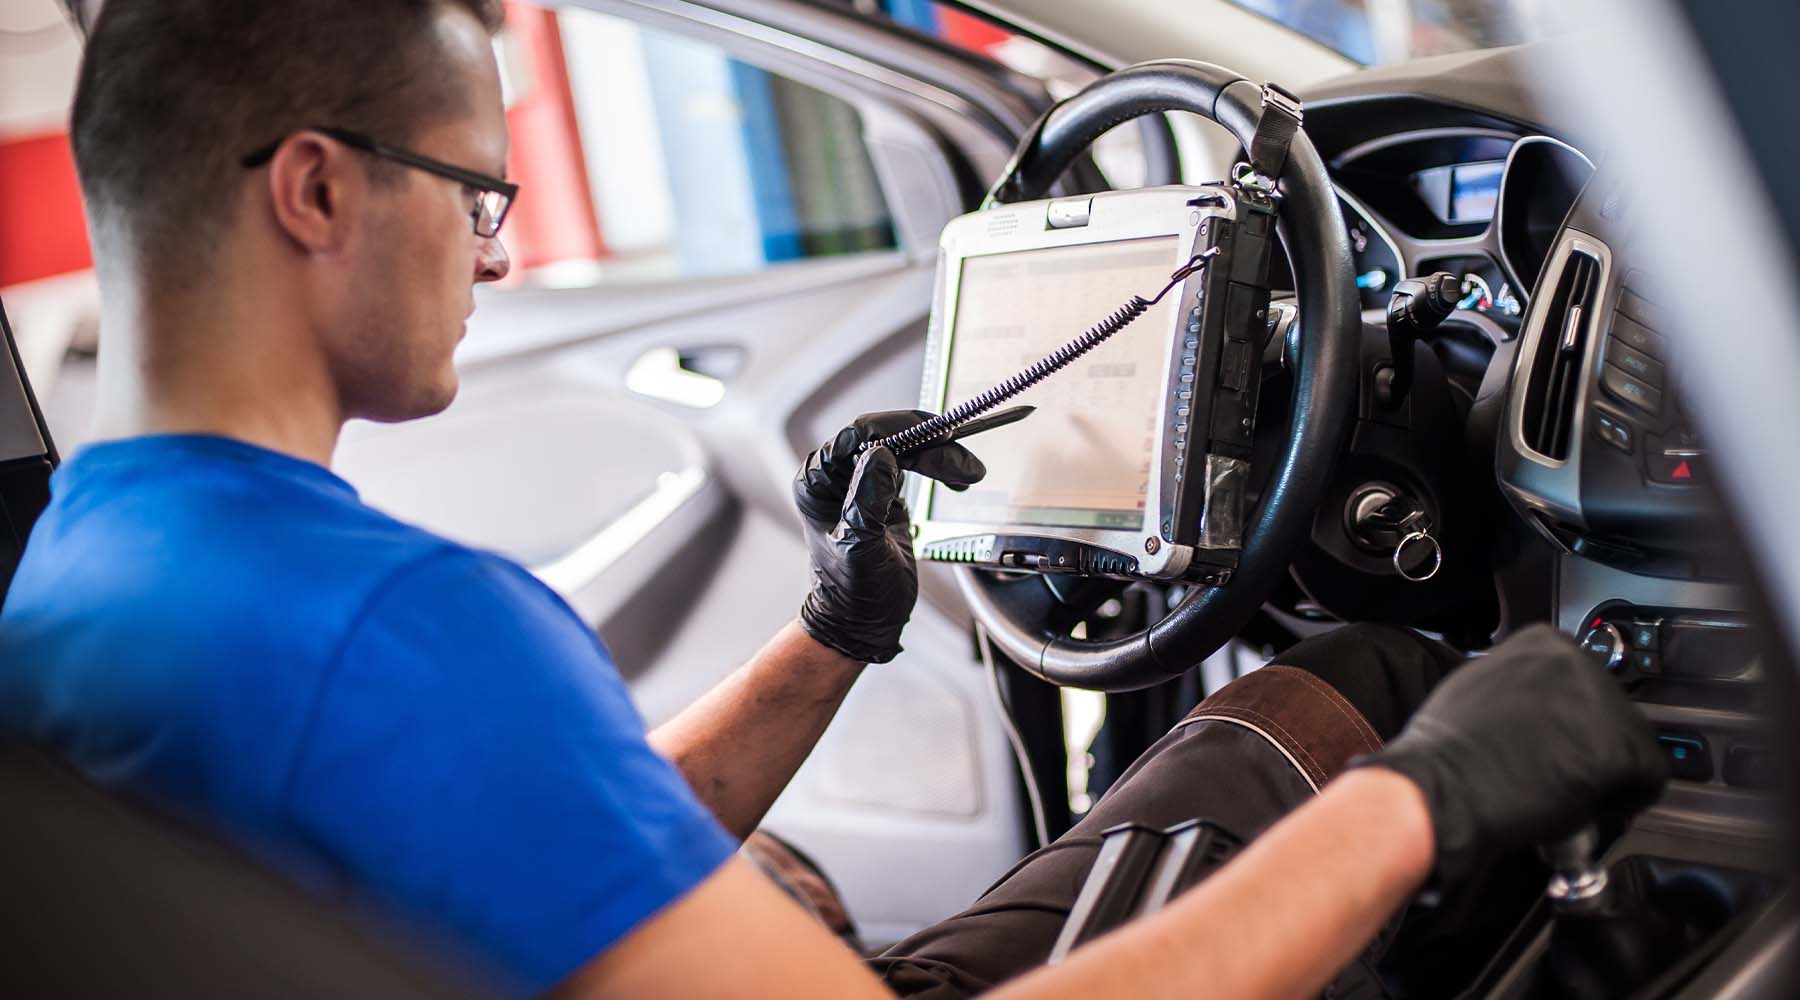 Kfz-Mechatroniker beim Abmessen elektronischer Sicherheitsprüfungen und das Erfassen elektronischer Messwerte an einem Fahrzeug im Innenraum.